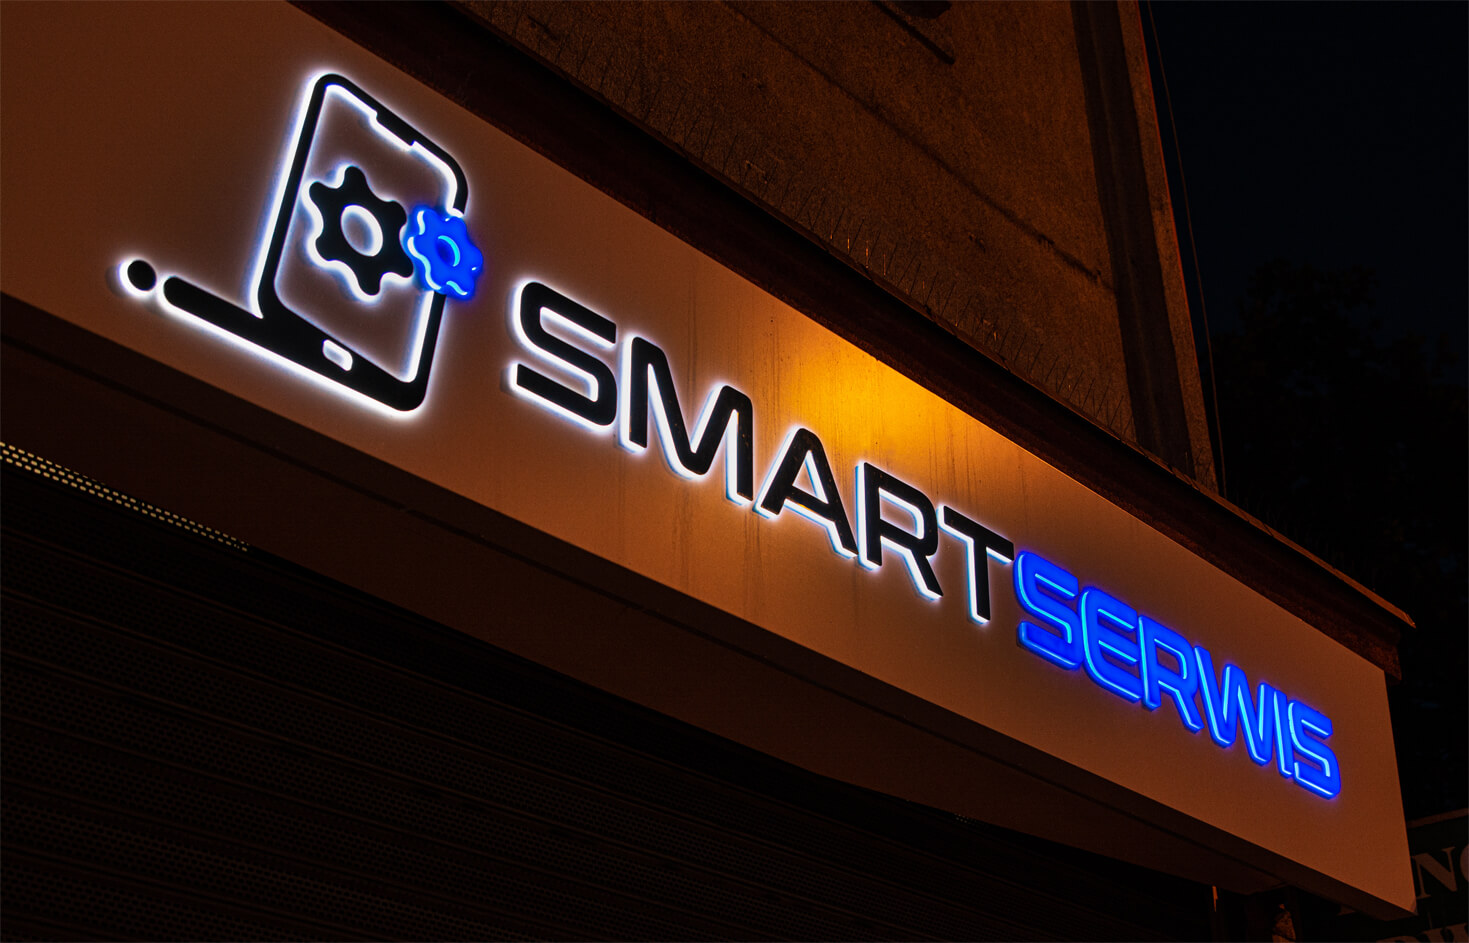 servizio intelligente - Smart Servis - pubblicità spaziale su un cassone situato sopra l'ingresso